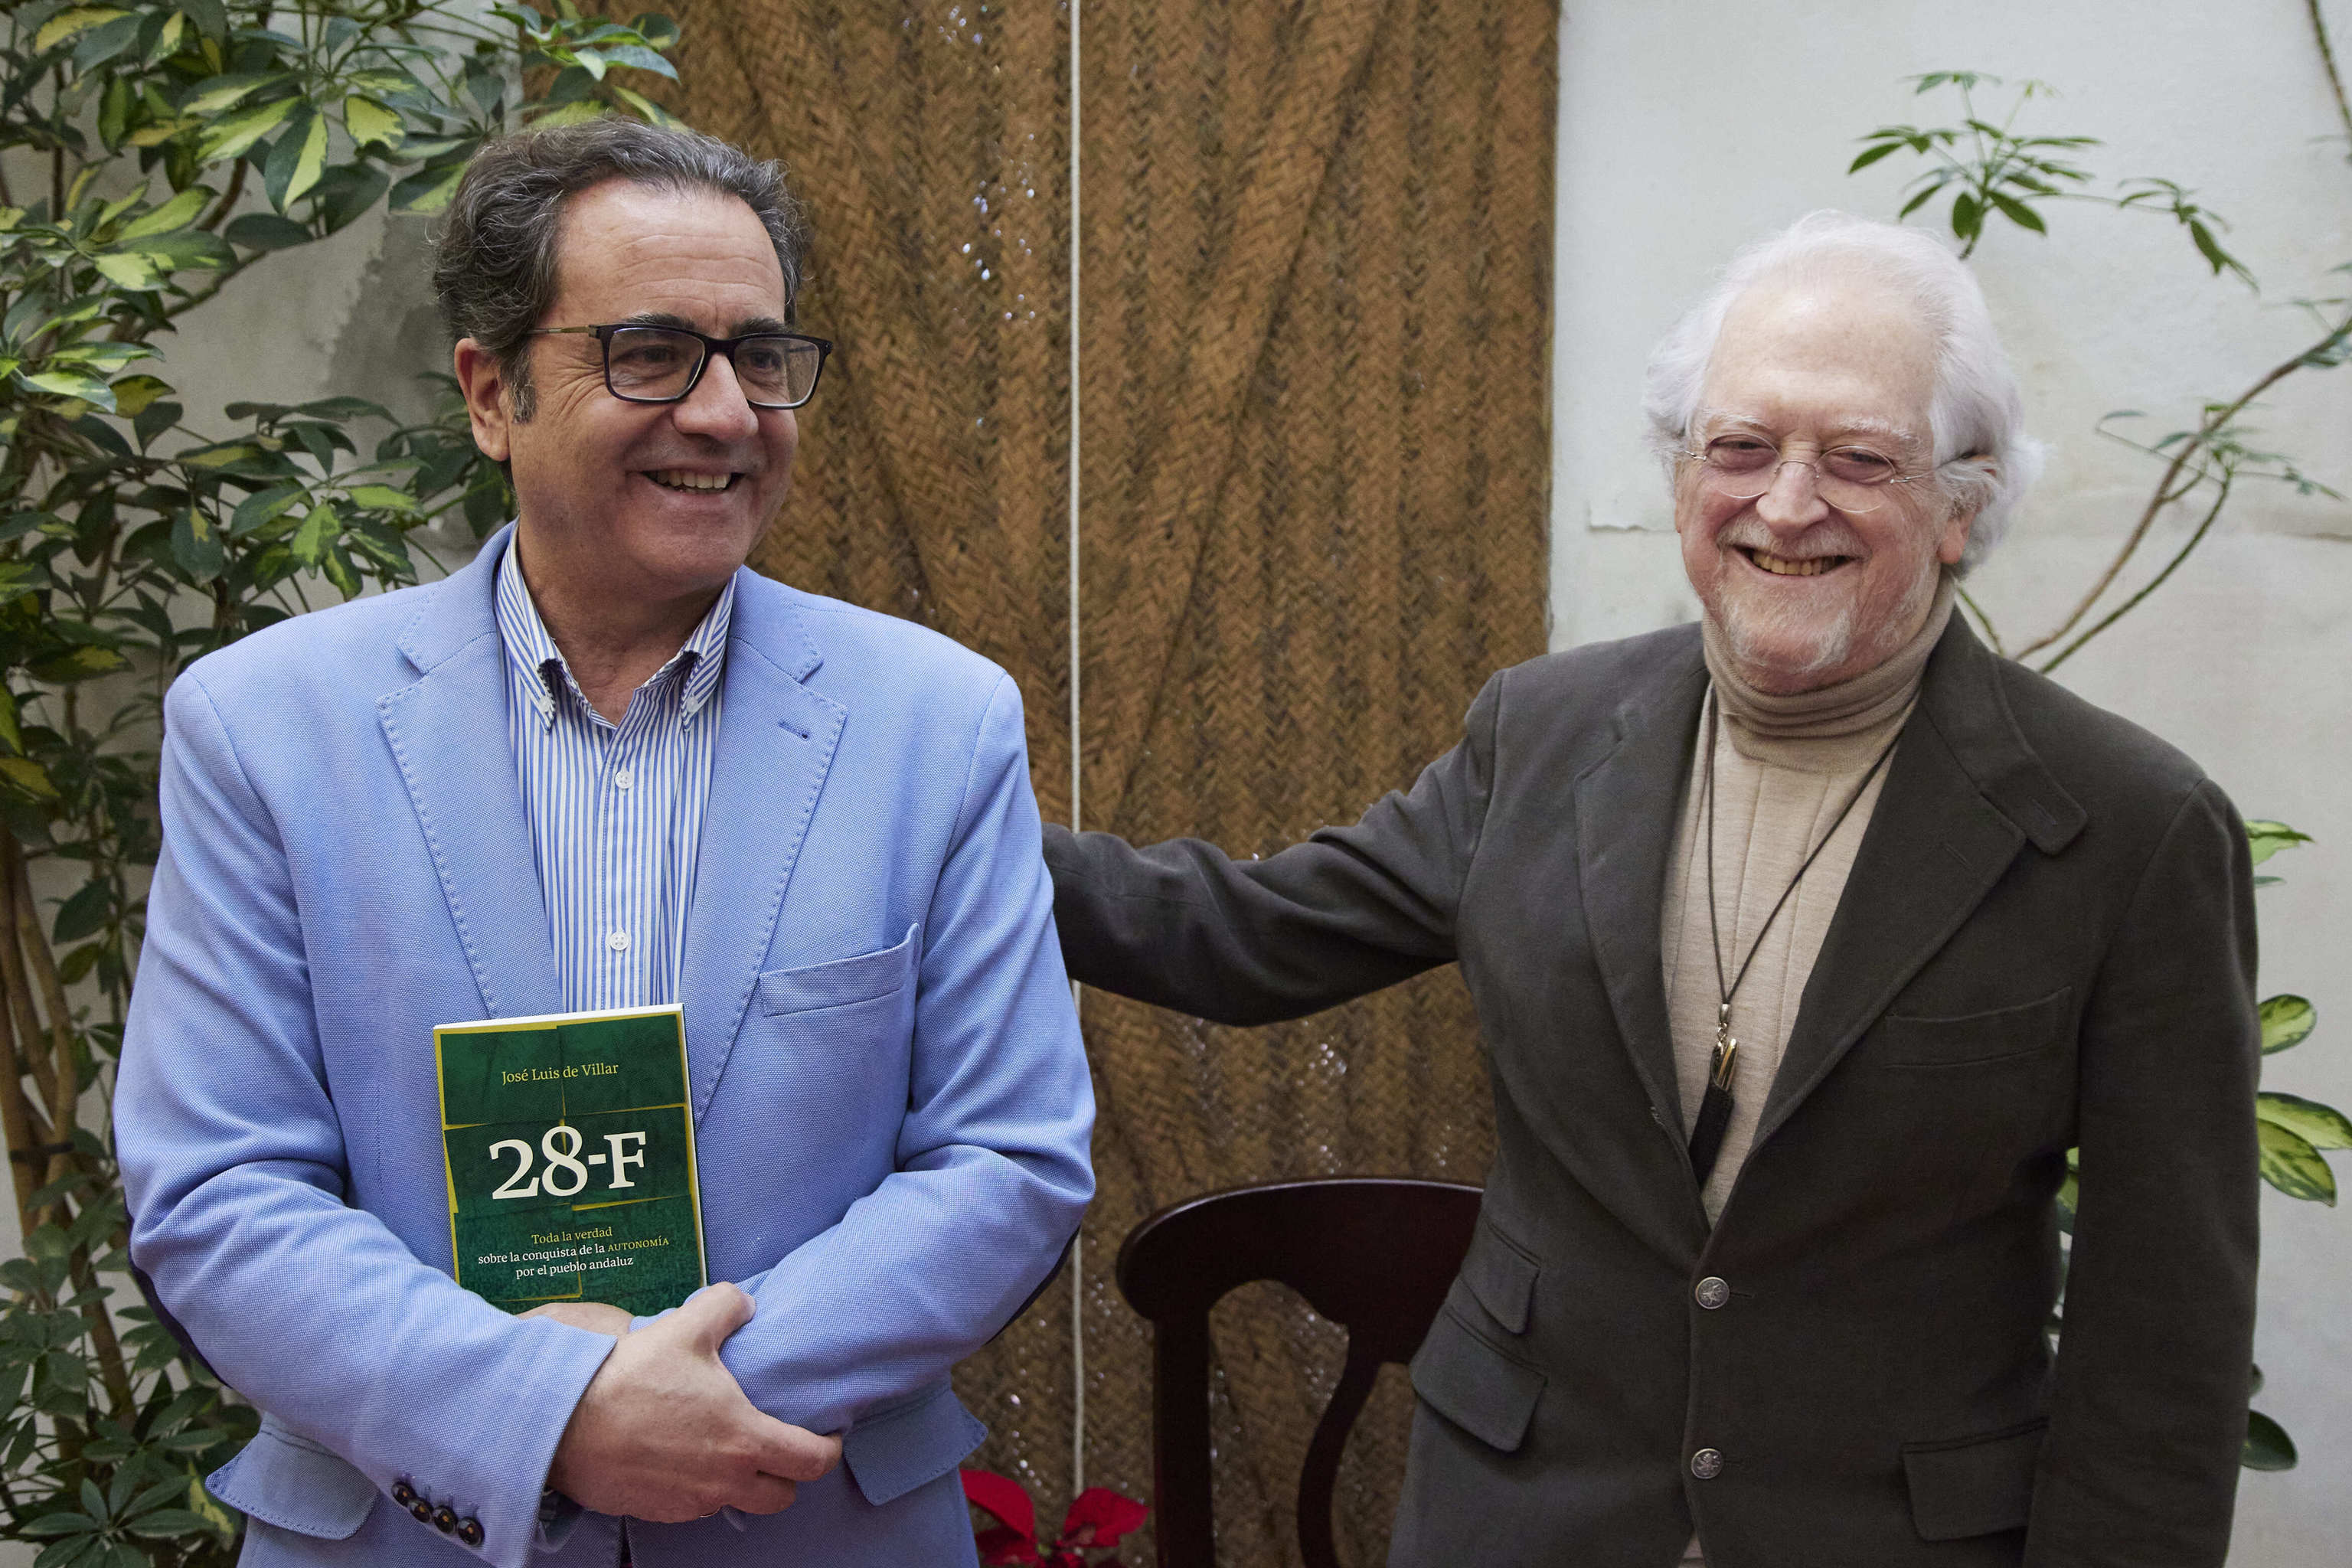 El historiador Jos Luis Villar posa con el libro junto al fundador del PA Alejandro Rojas-Marcos, durante la presentacin del libro "28-F. Toda la verdad sobre la conquista de la Autonoma por el pueblo andaluz".